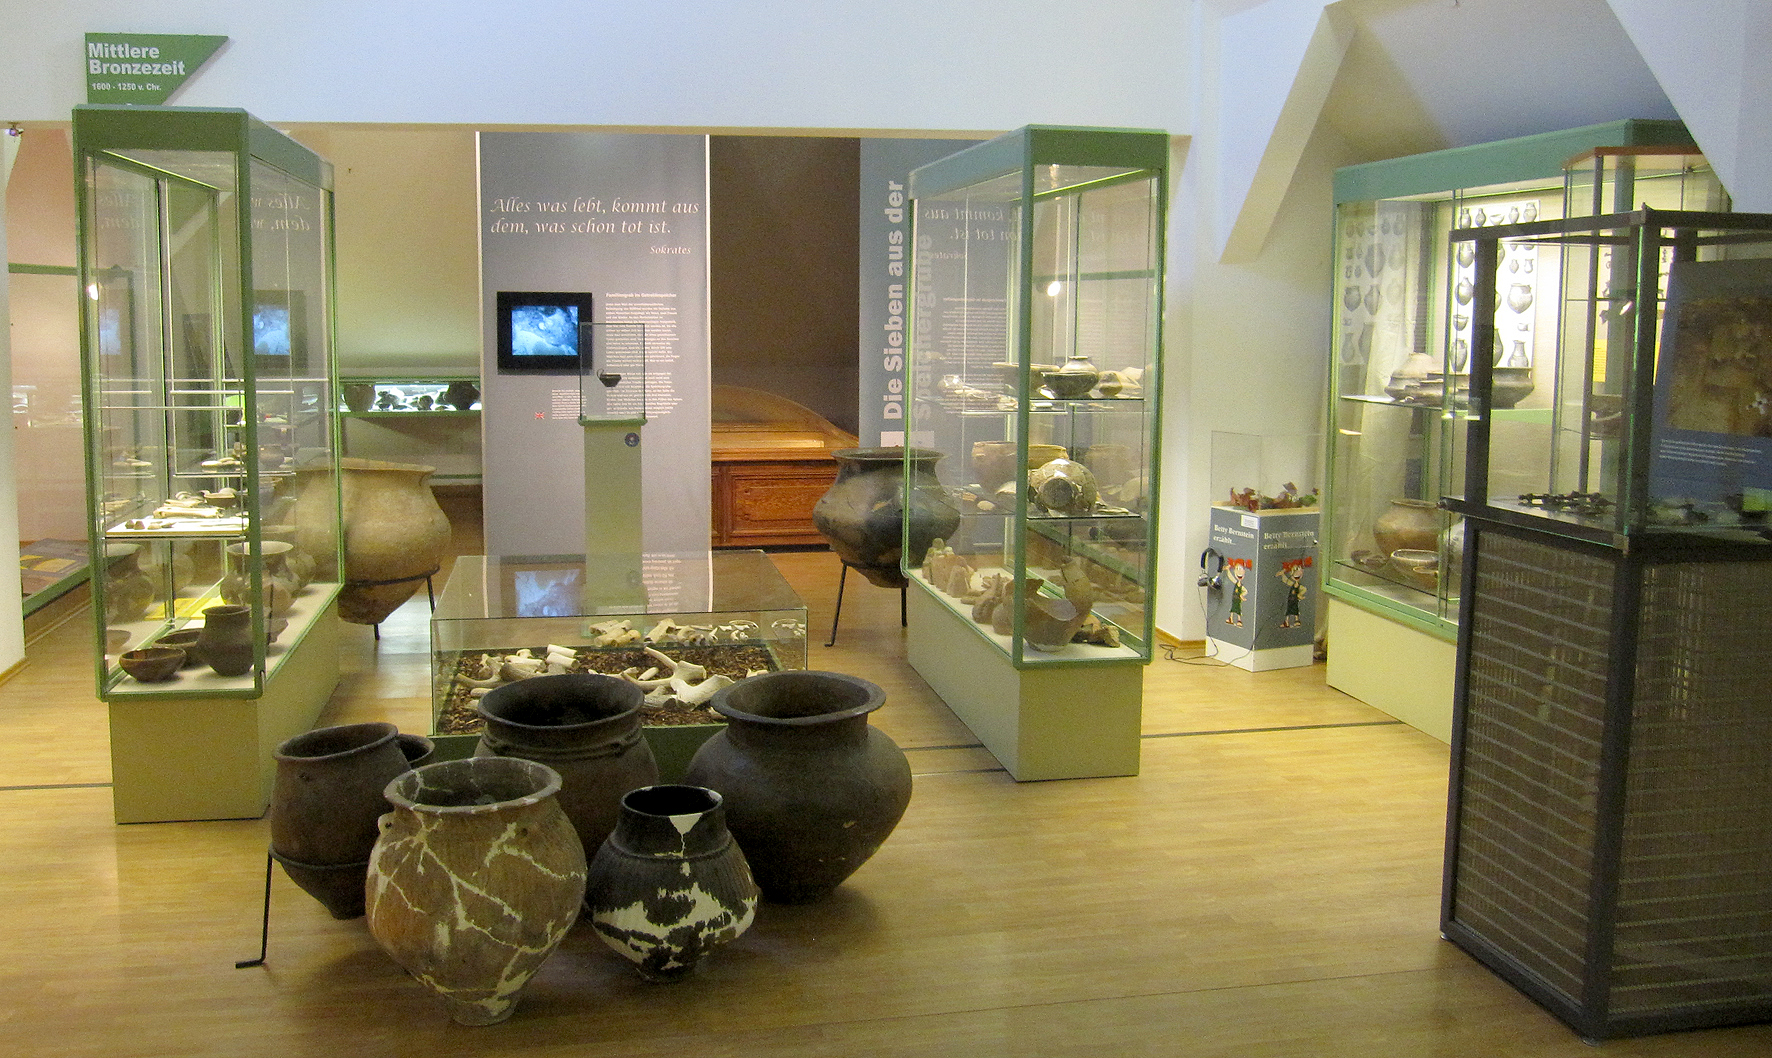 Foto eines Ausstellungsraums im Stillfried Museum, in dem diverse archäologische Funde aus der Region gezeigt werden.